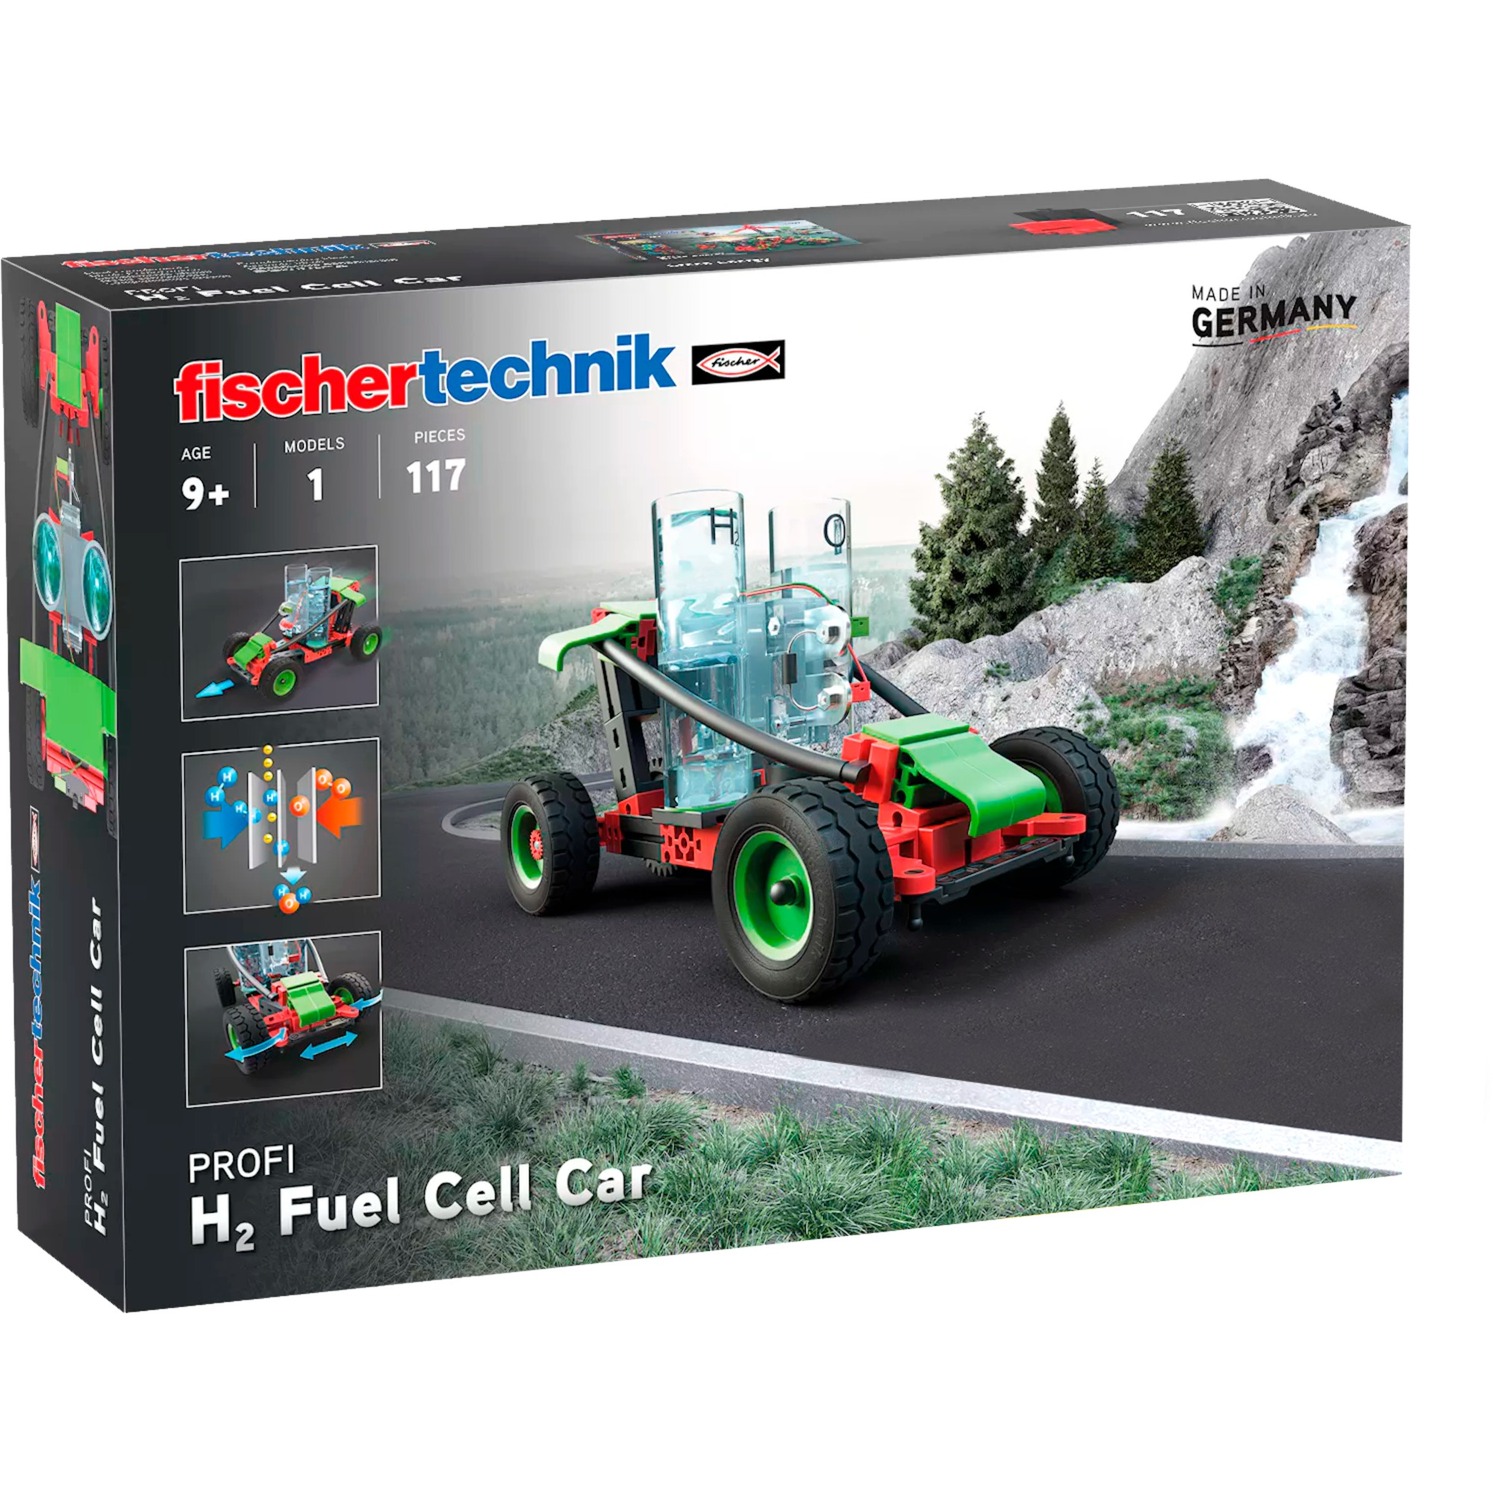 H2 Fuel Cell Car, Konstruktionsspielzeug von Fischertechnik